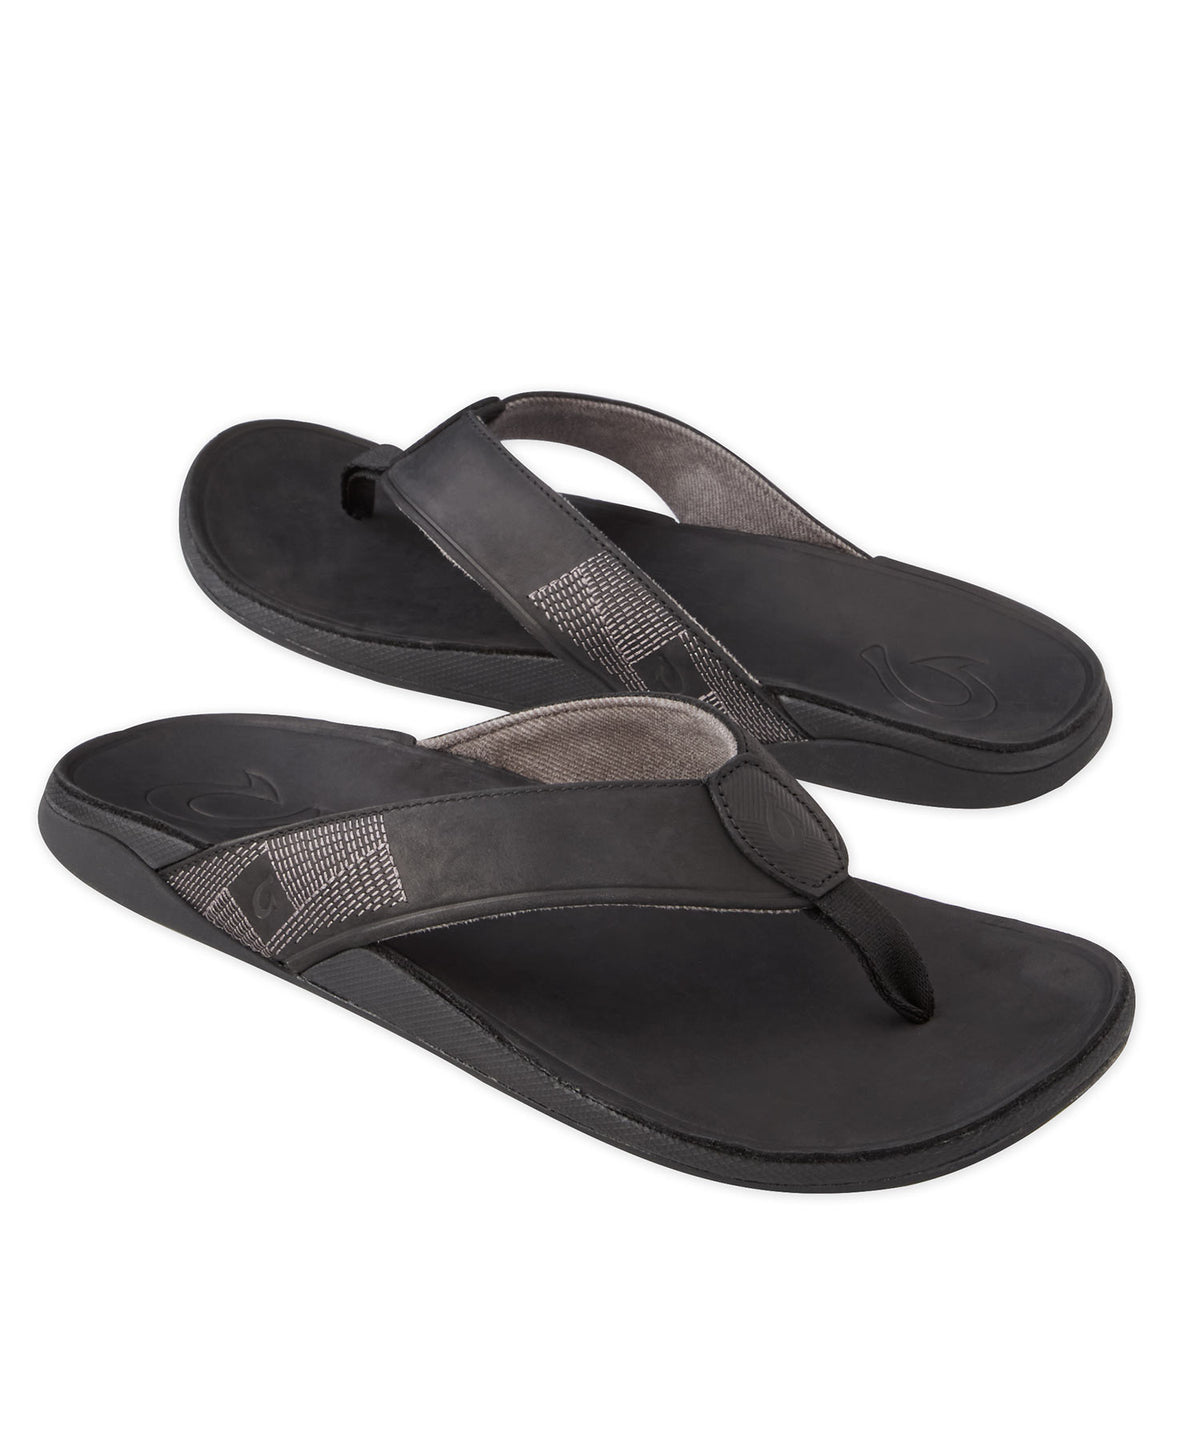 OluKai Tuahine Leather Sandal